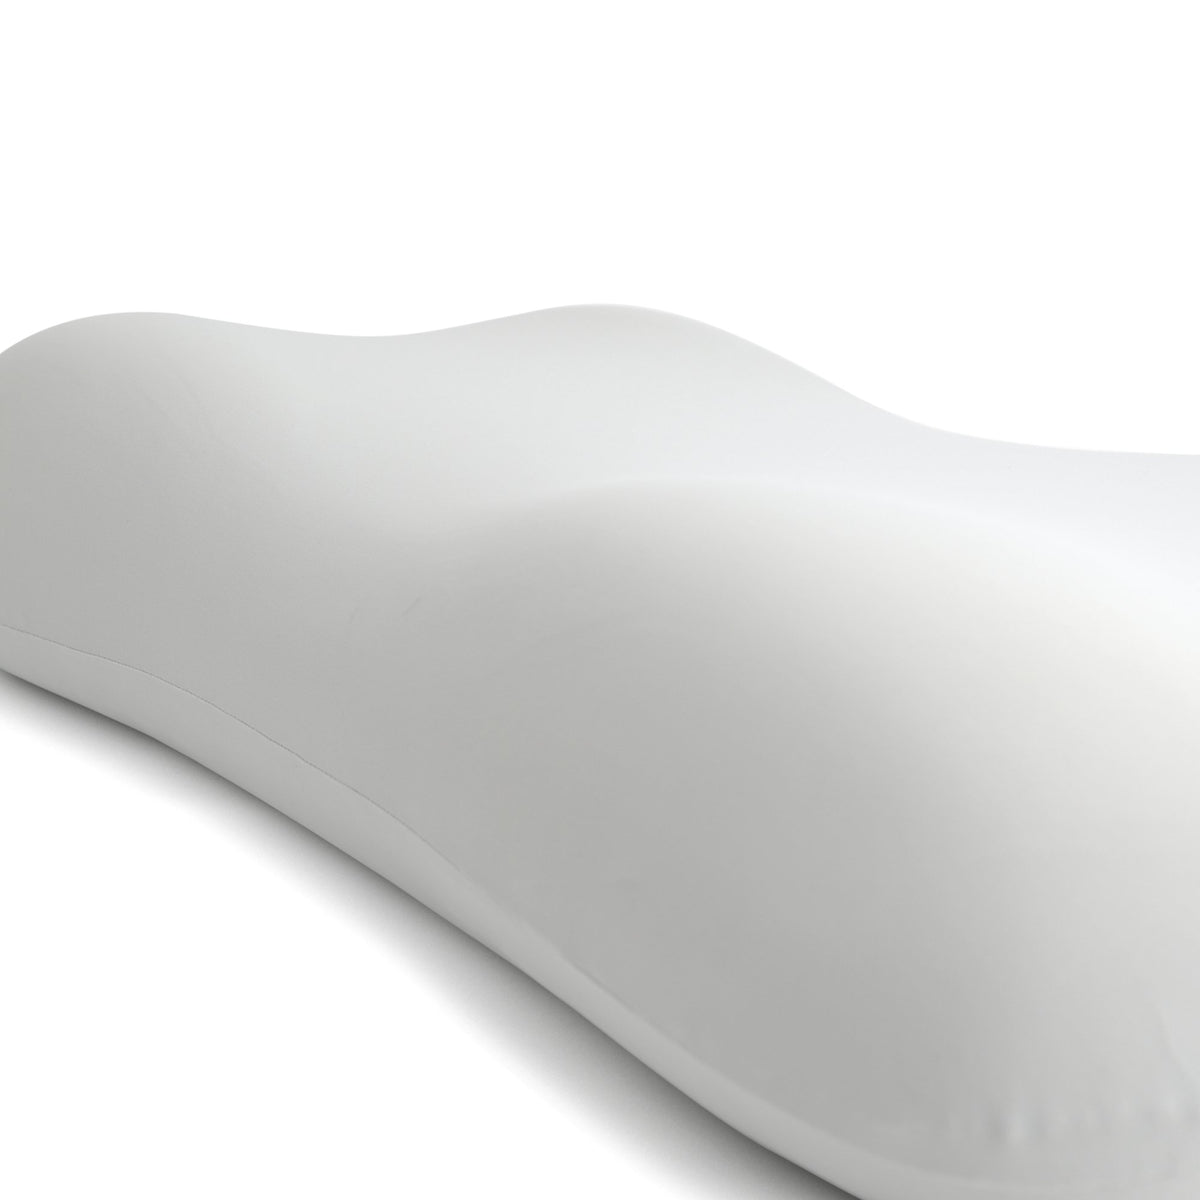 Cushion Lab Travel Deep Sleep Pillow Cover - White